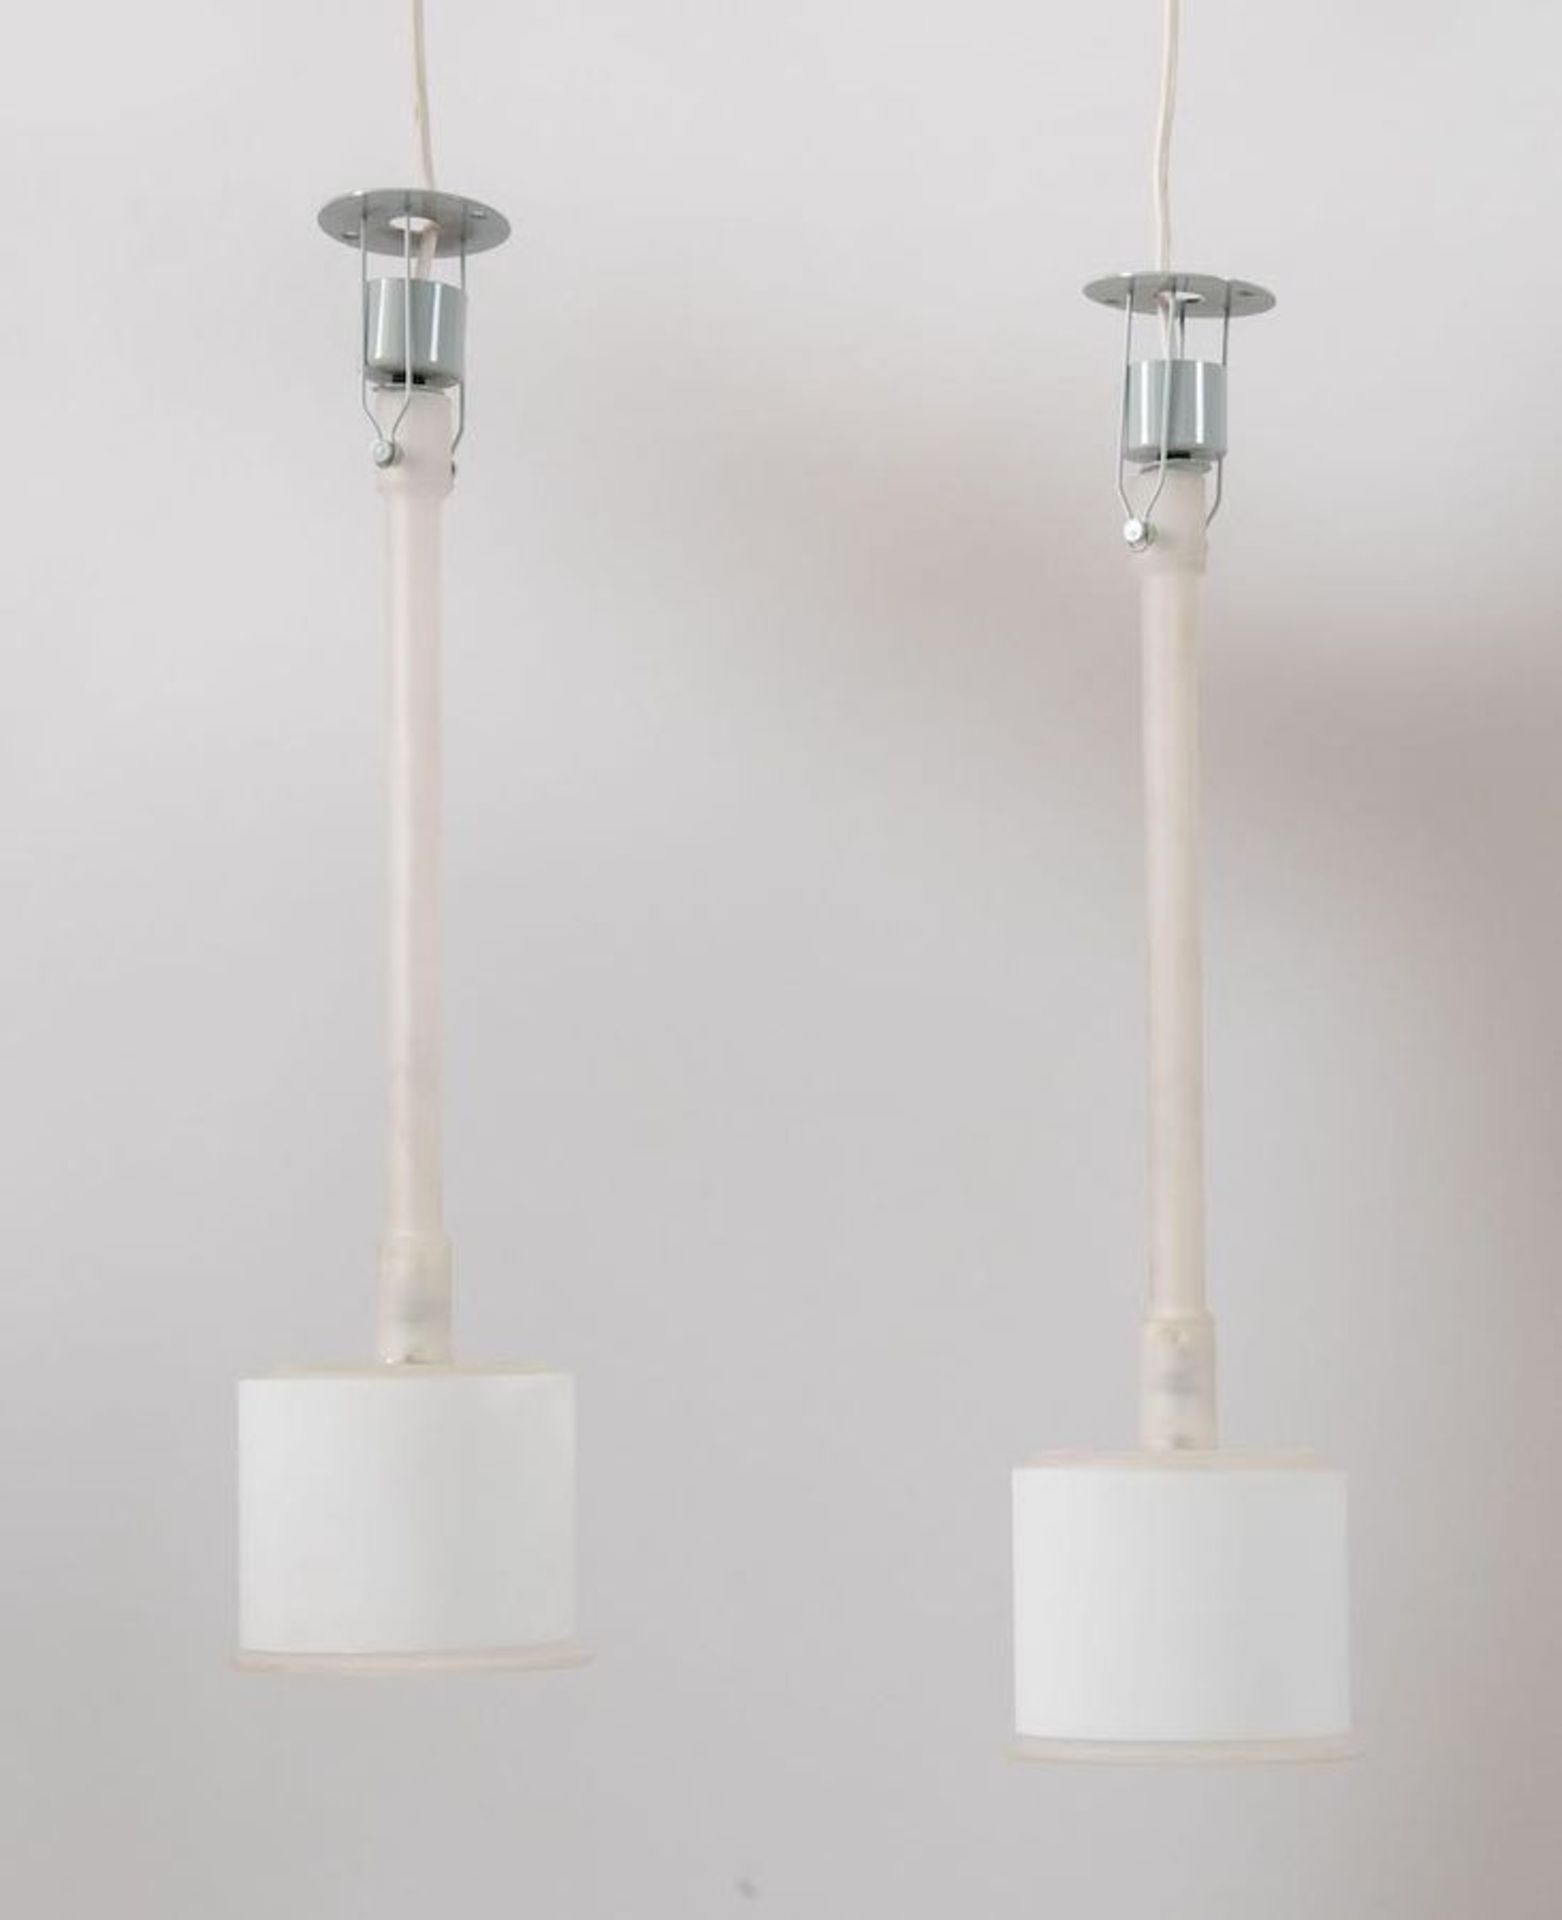 PIERO CASTIGLIONI Coppia di lampadari a sospensione o a parete della serie Canna Fiorita. Stelo e di - Image 2 of 2